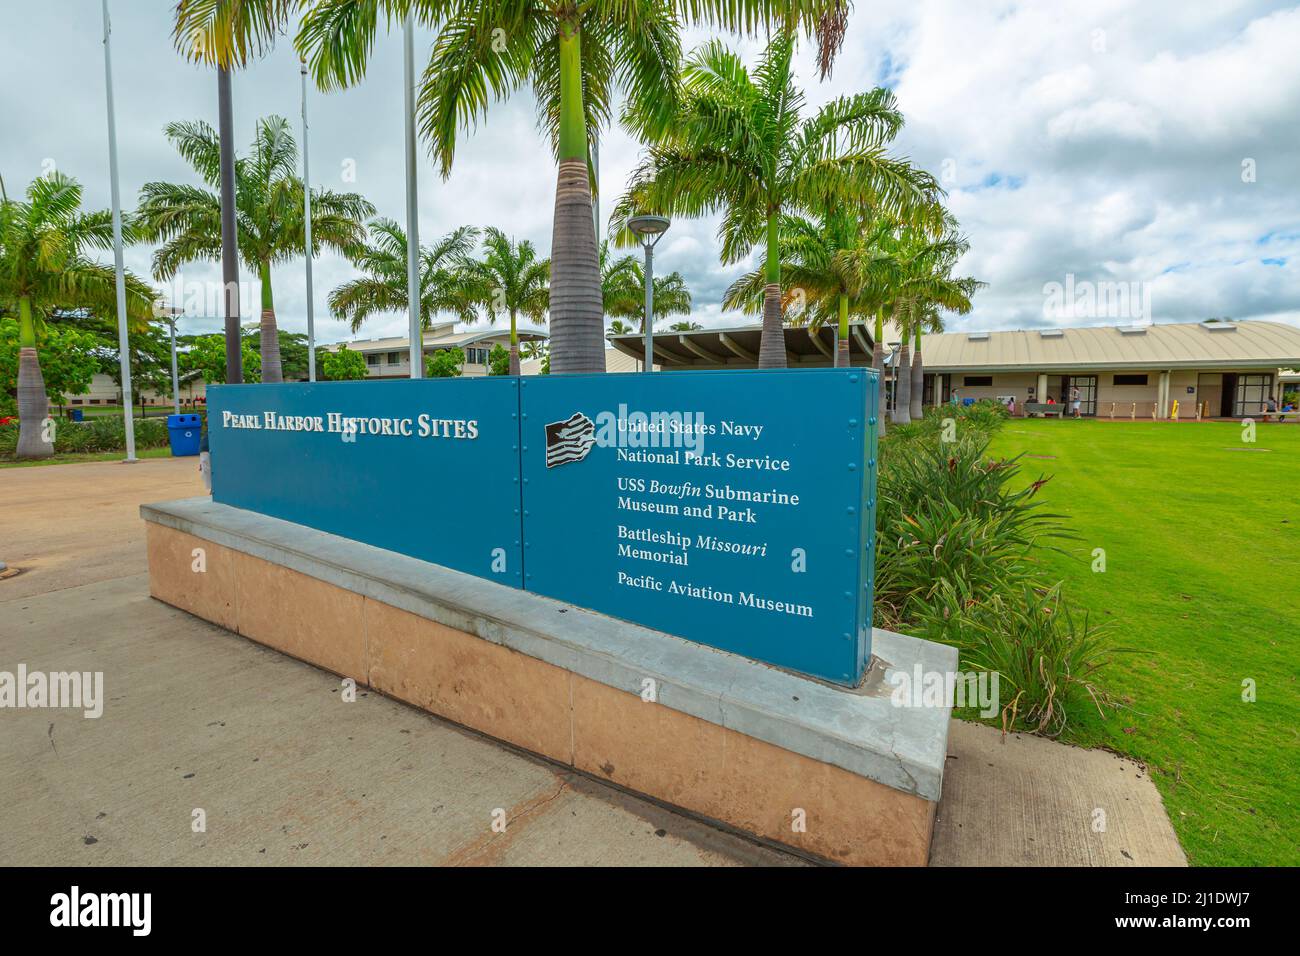 HONOLULU, OAHU, HAWAII, États-Unis - 21 AOÛT 2016 : porte d'entrée des sites historiques de Pearl Harbor sur l'île d'Oahu à Hawaï. Historique américain Banque D'Images